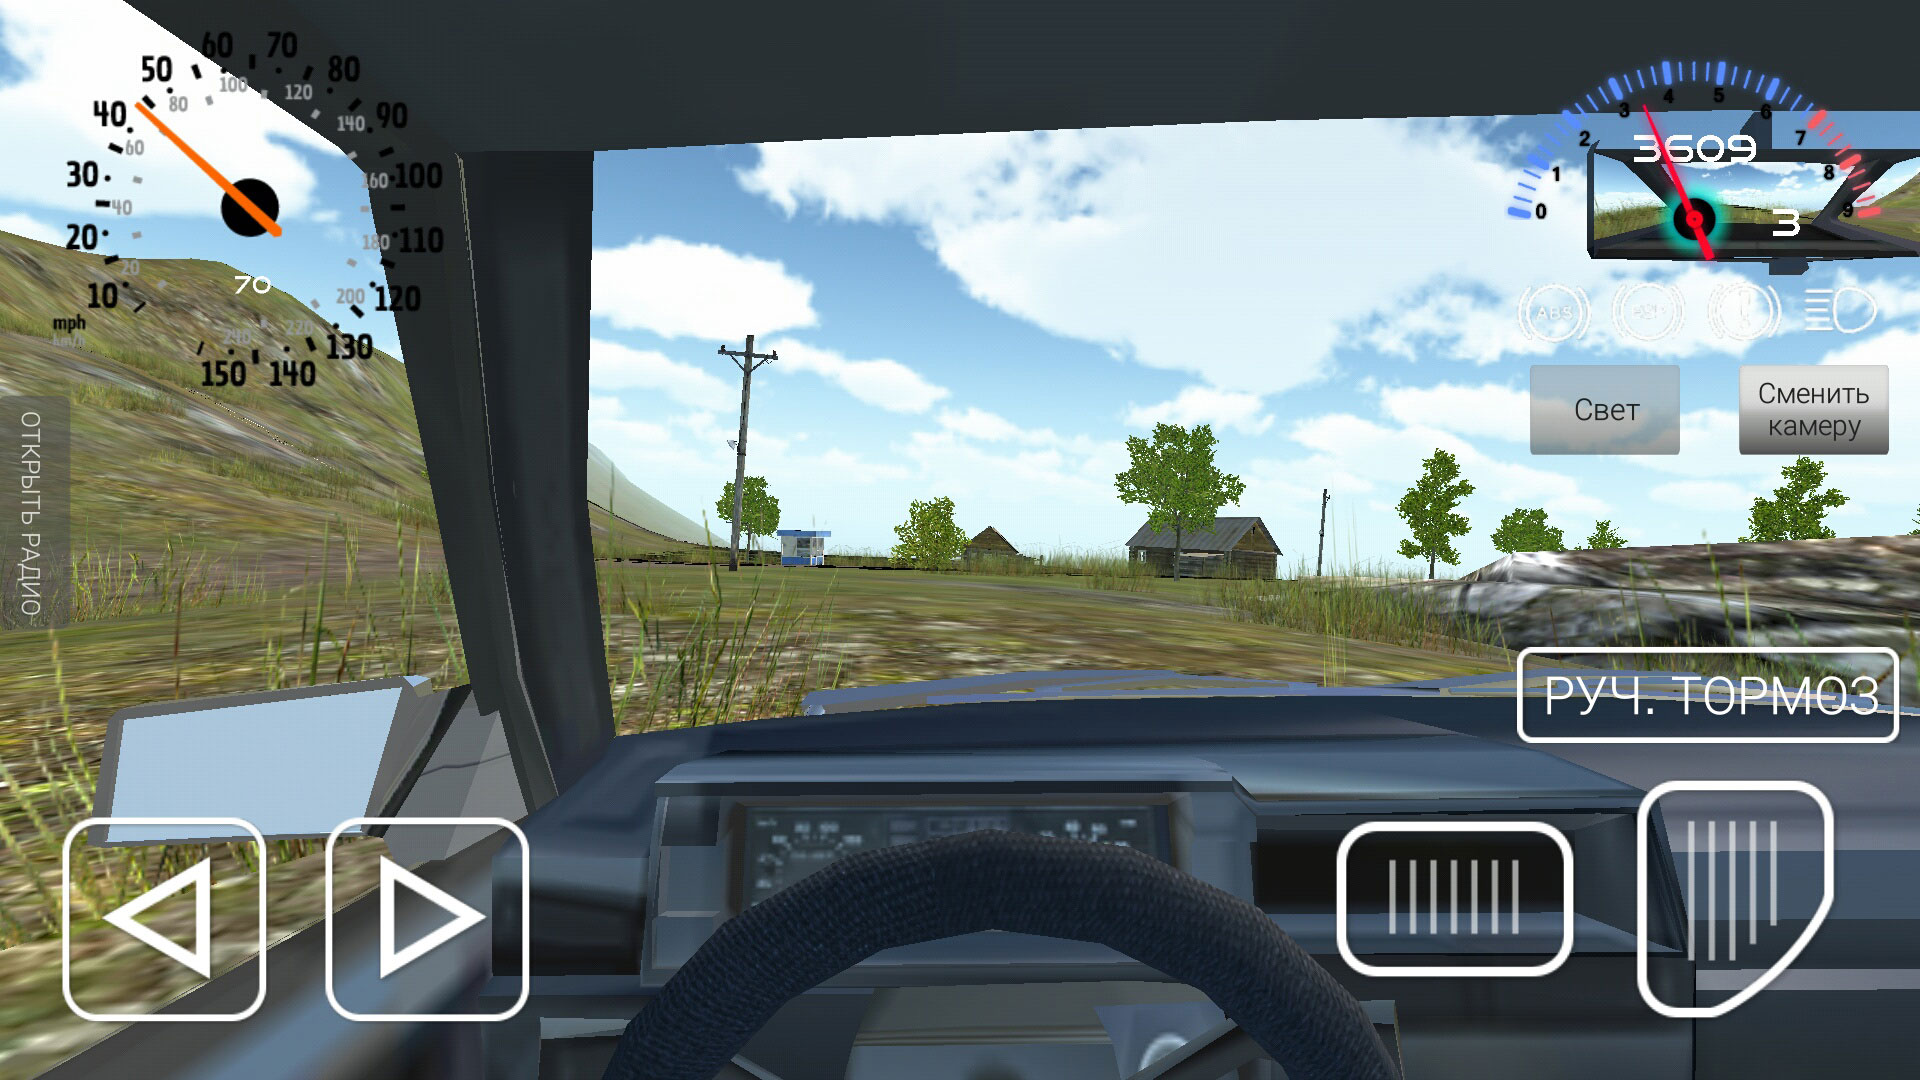 Симулятор экзамена по вождению. Симулятор вождения ВАЗ 2108. Игра симулятор вождения ВАЗ 2108. ВАЗ 2108 игра симулятор. Симулятор автомобиля ВАЗ 2108.